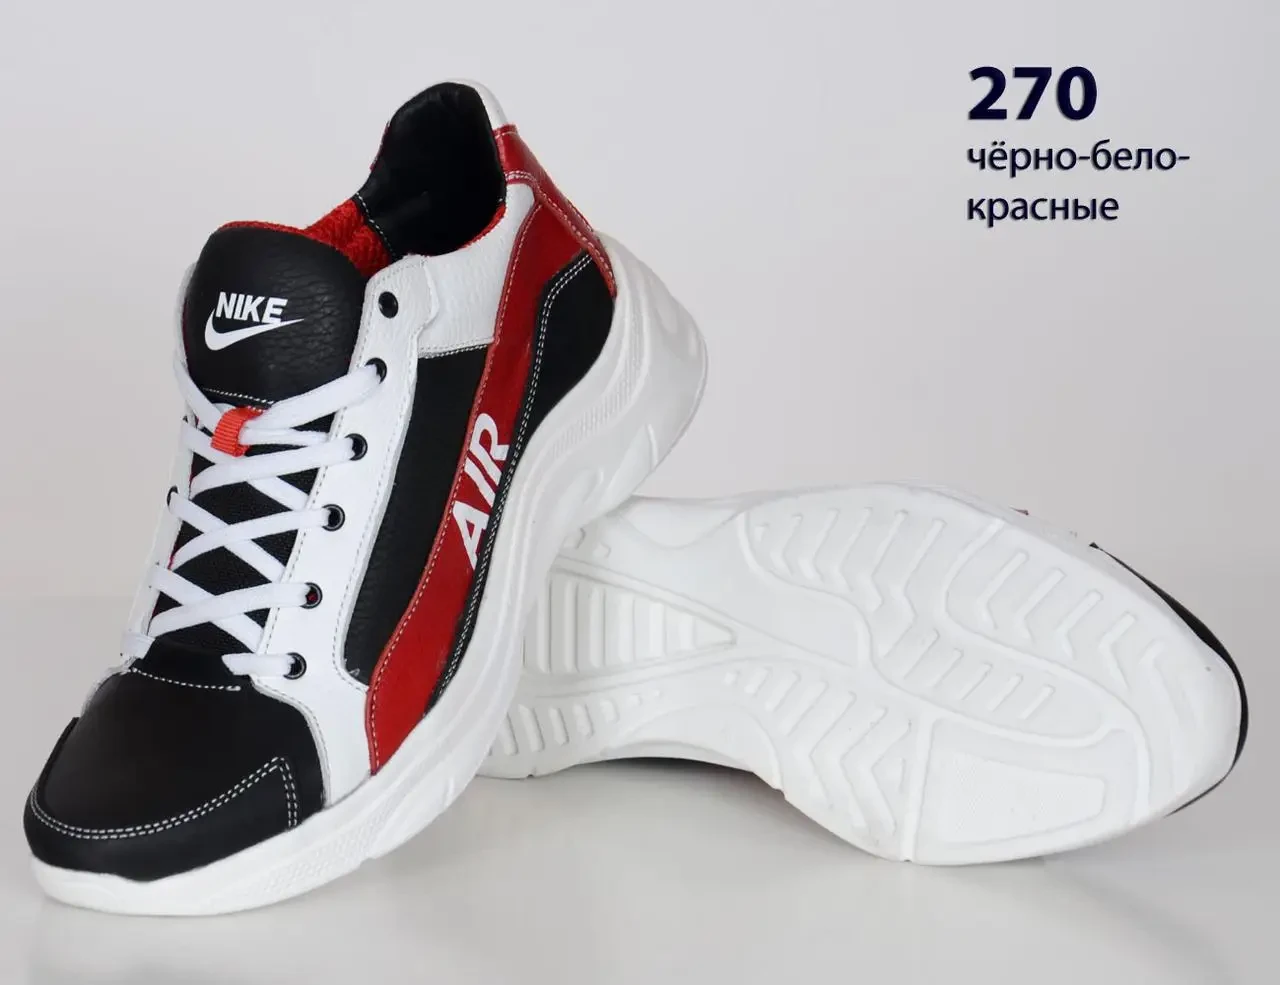 Шкіряні кросівки Nike  (270 чорно-біло-червона) чоловічі спортивні кросівки шкіряні чоловічі